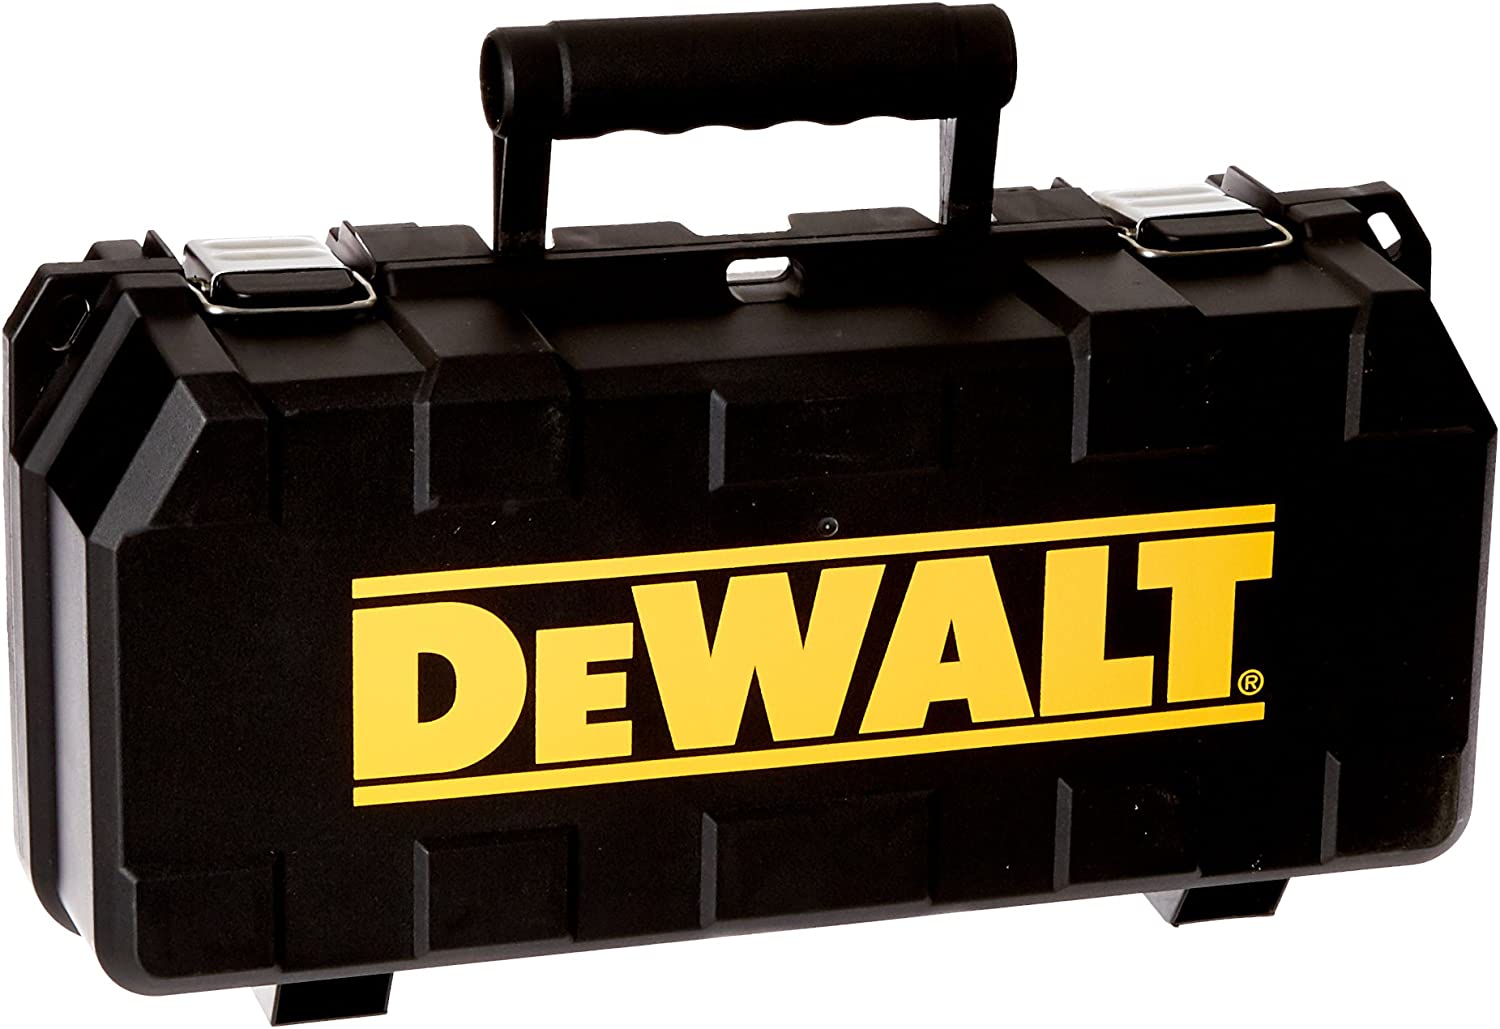 DeWALT 4 1/2" Grinder Kit with Durable Plastic Case 3